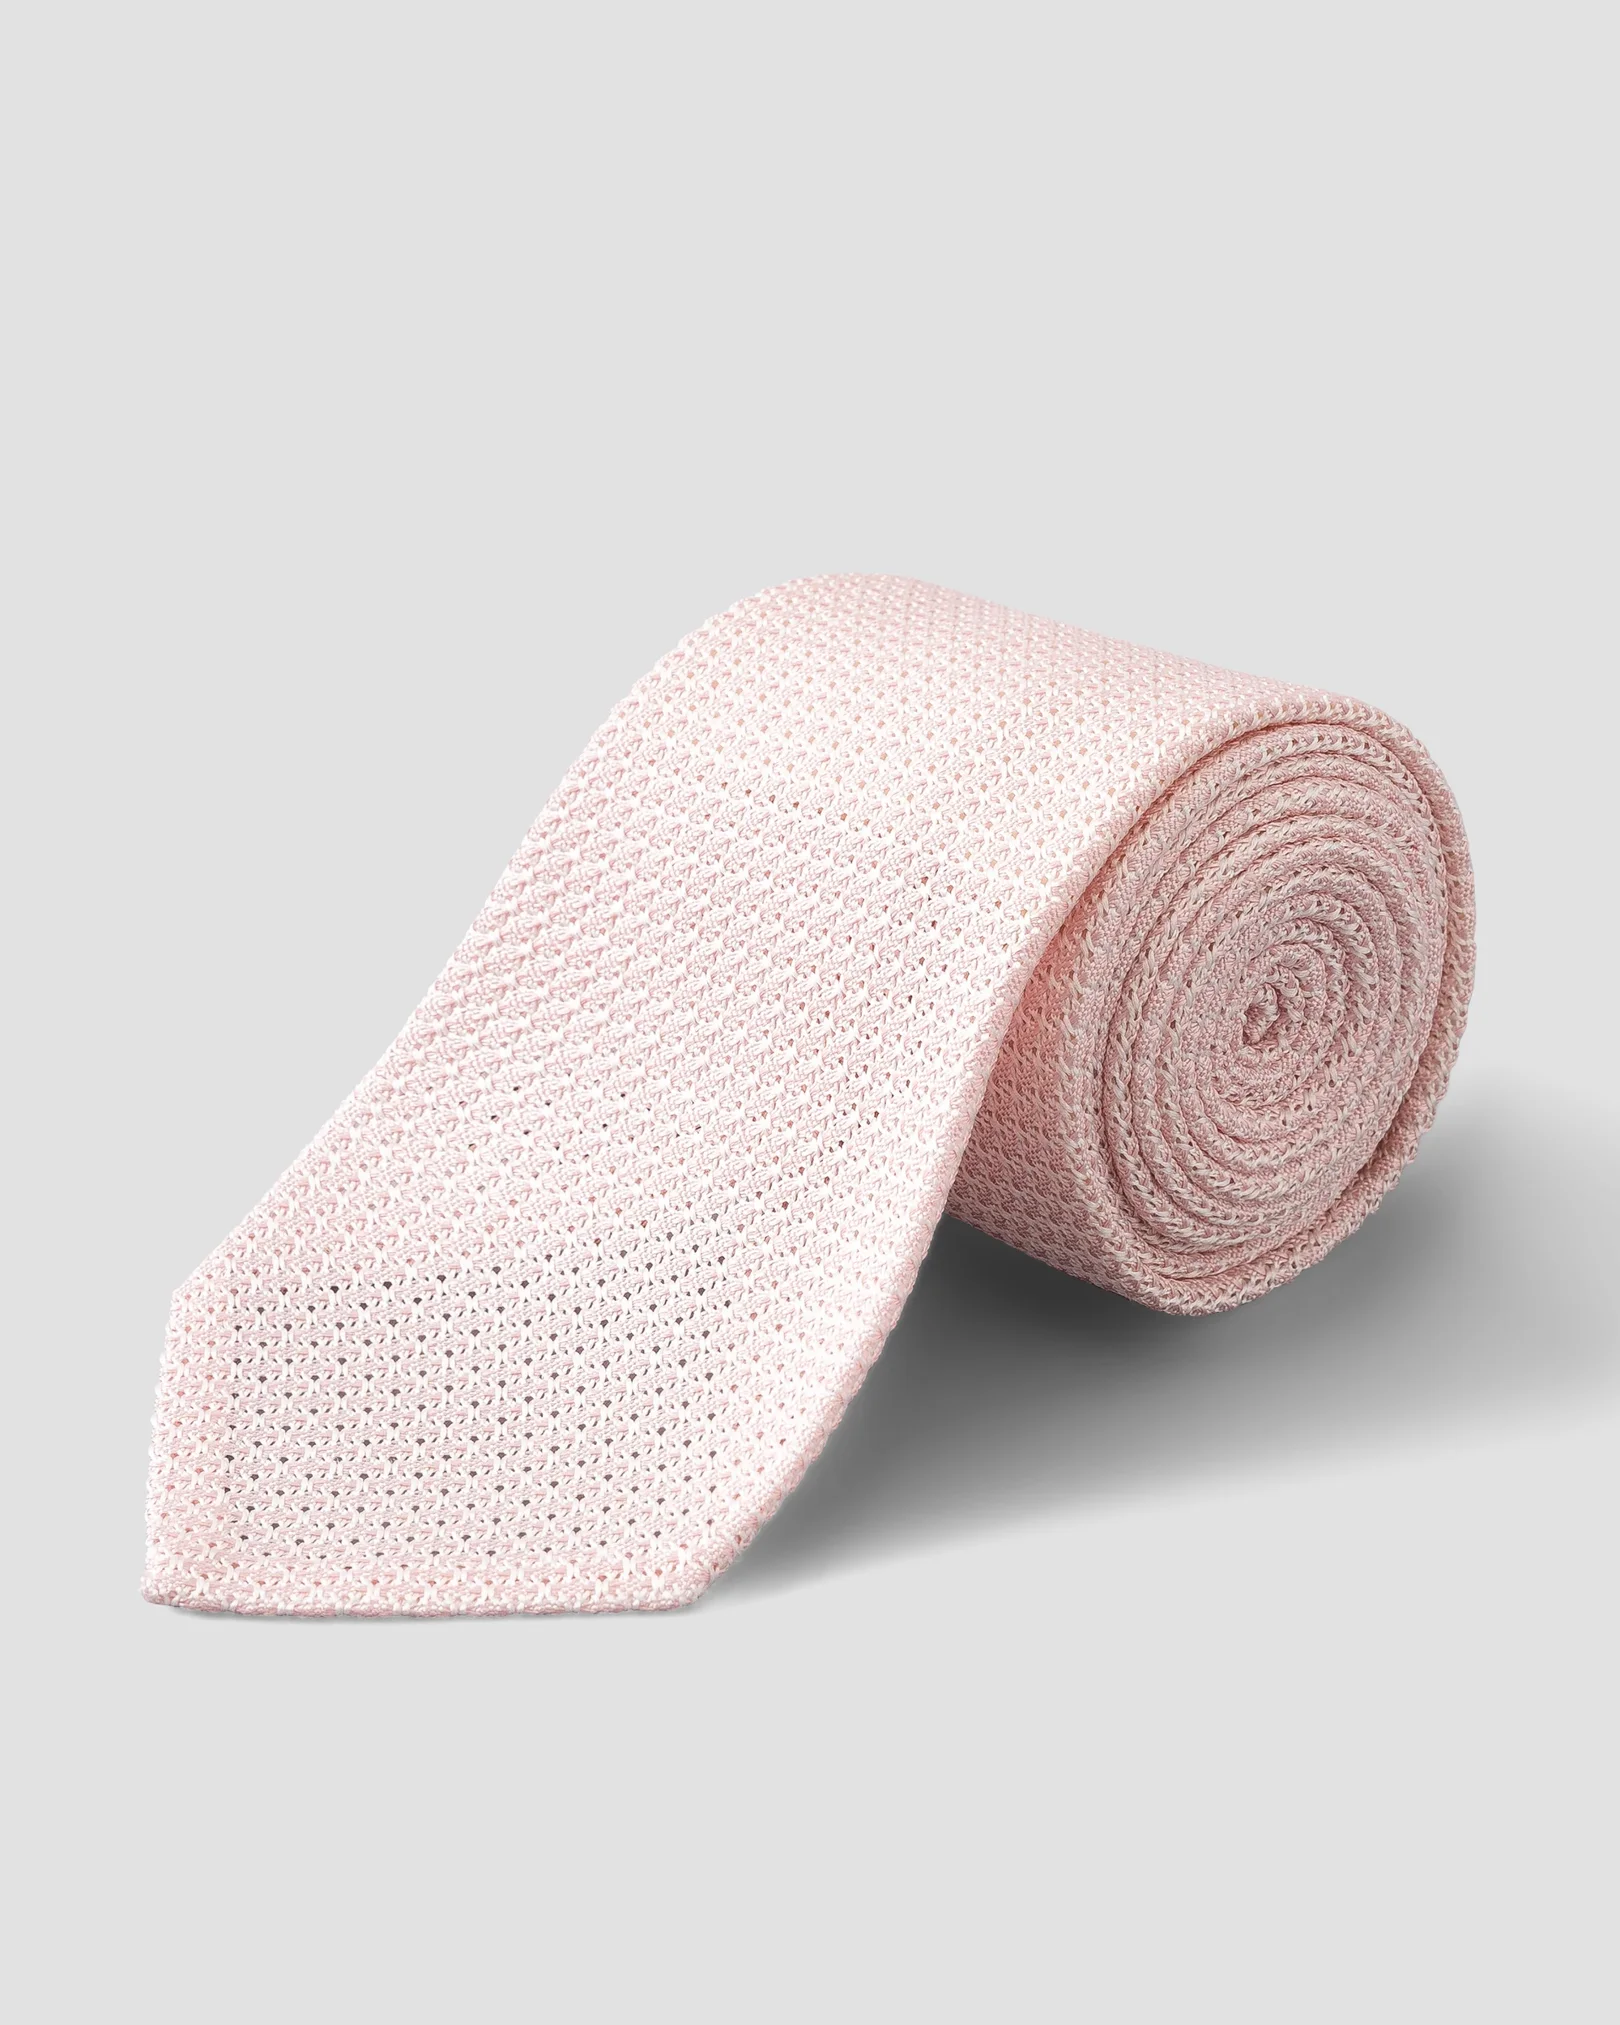 Pink Grenadine Silk Tie